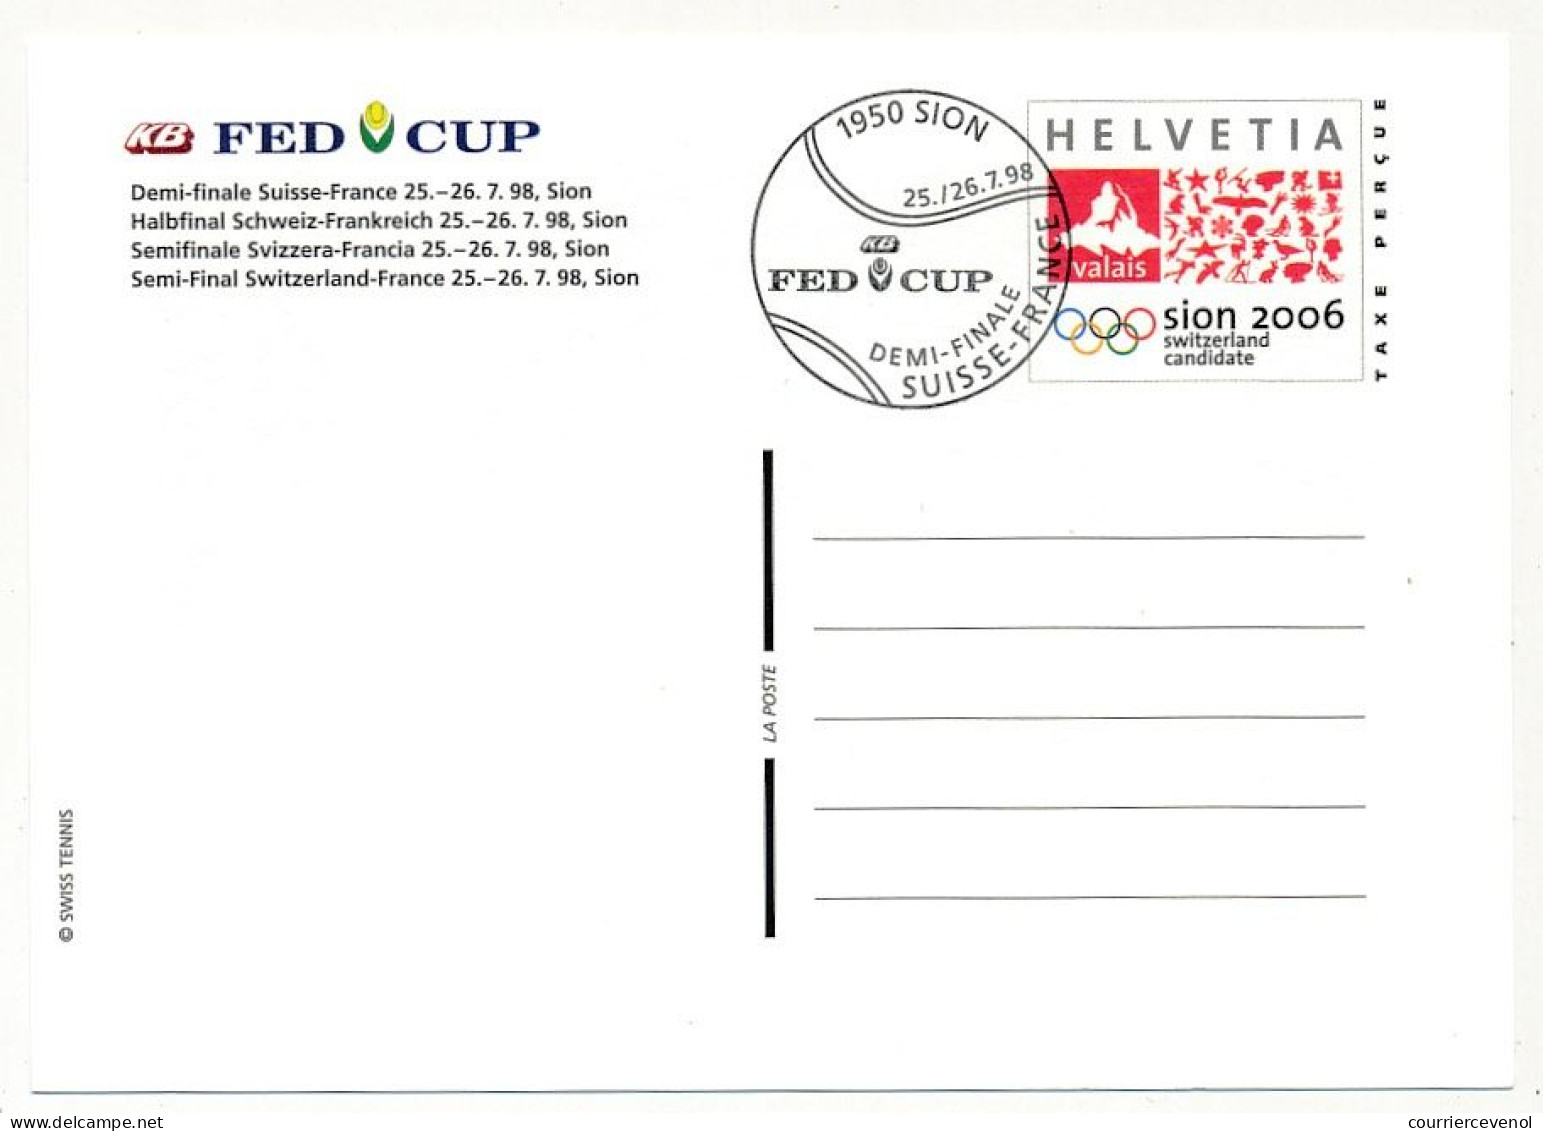 SUISSE => 8 Entiers postaux (CP) => Candidature Sion pour JO. FED CUP - 2 obl Demi finale Suisse France, 2 obl finale +